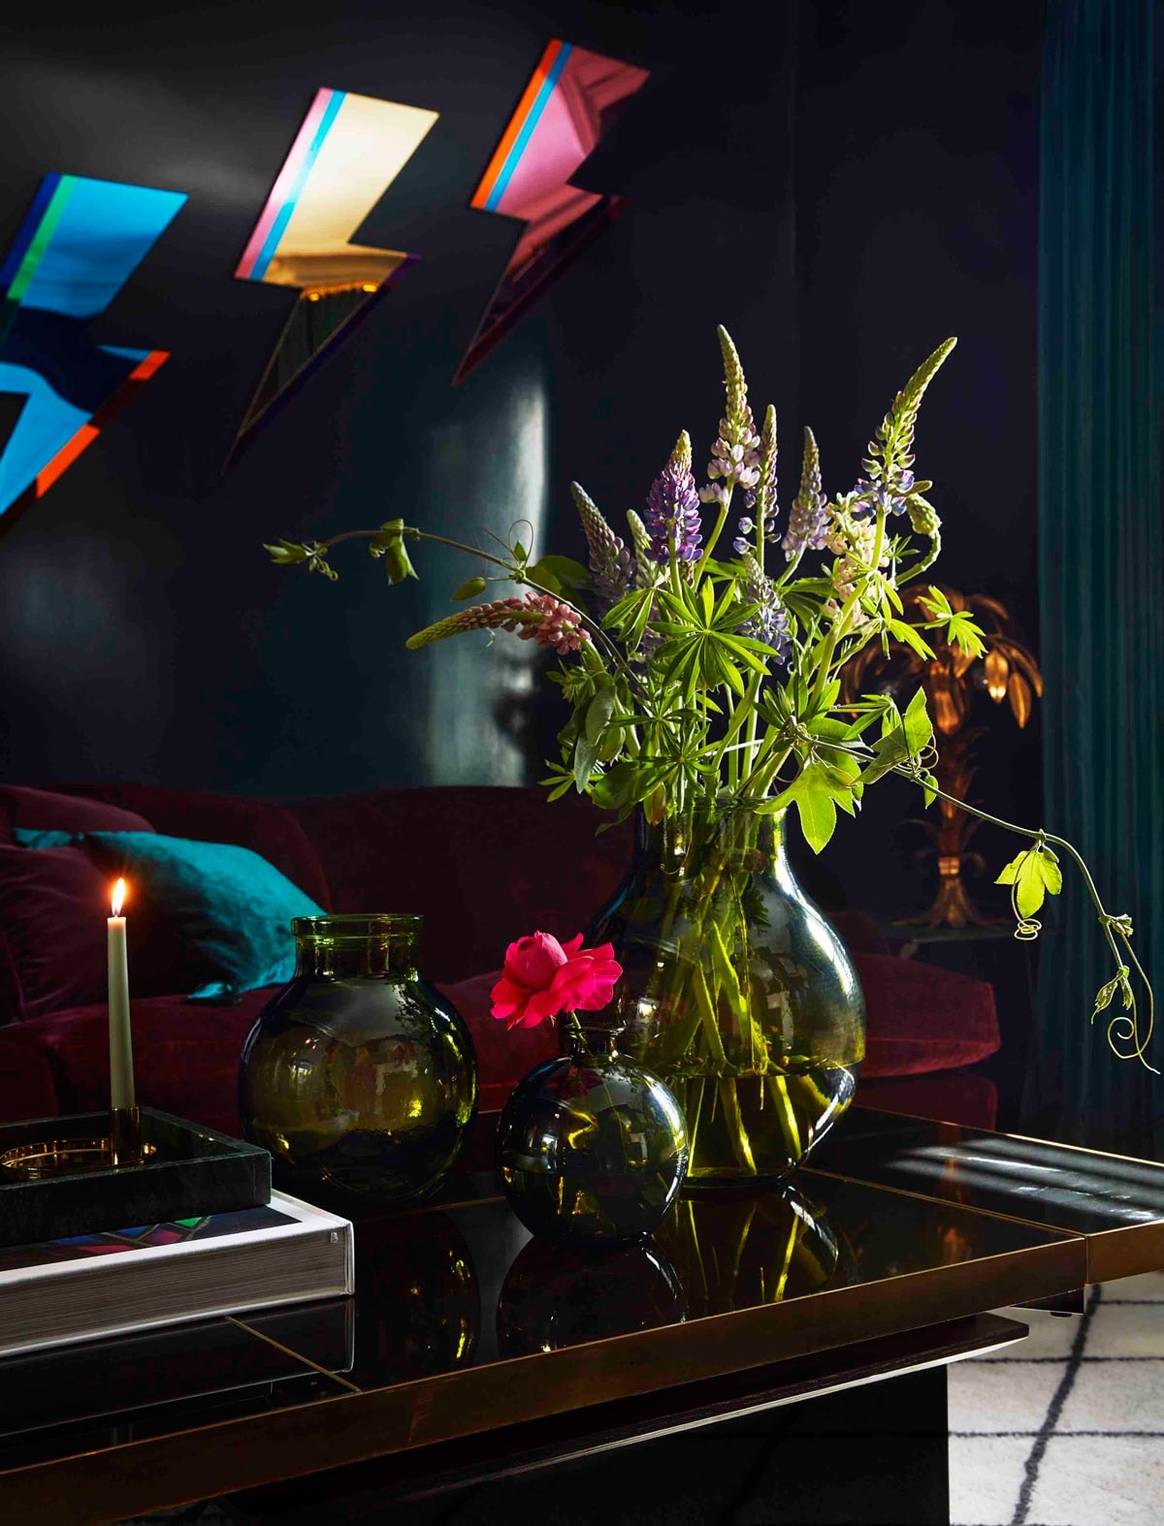 El estilo british & chic de Poppy Delevingne protgoniza la última campaña de H&M Home